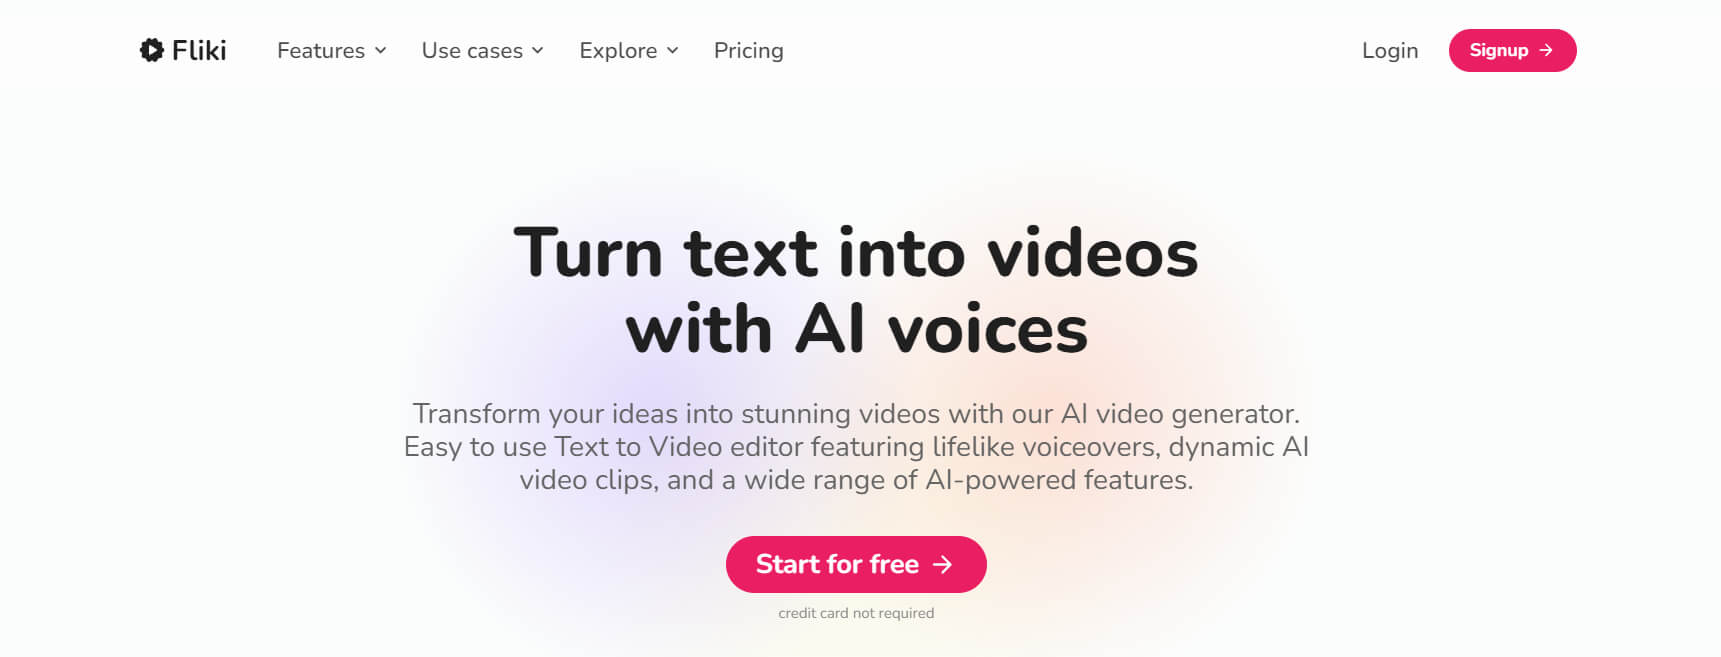  Générateur de vidéos alimenté par l'IA transforme le texte en vidéos réalistes. 